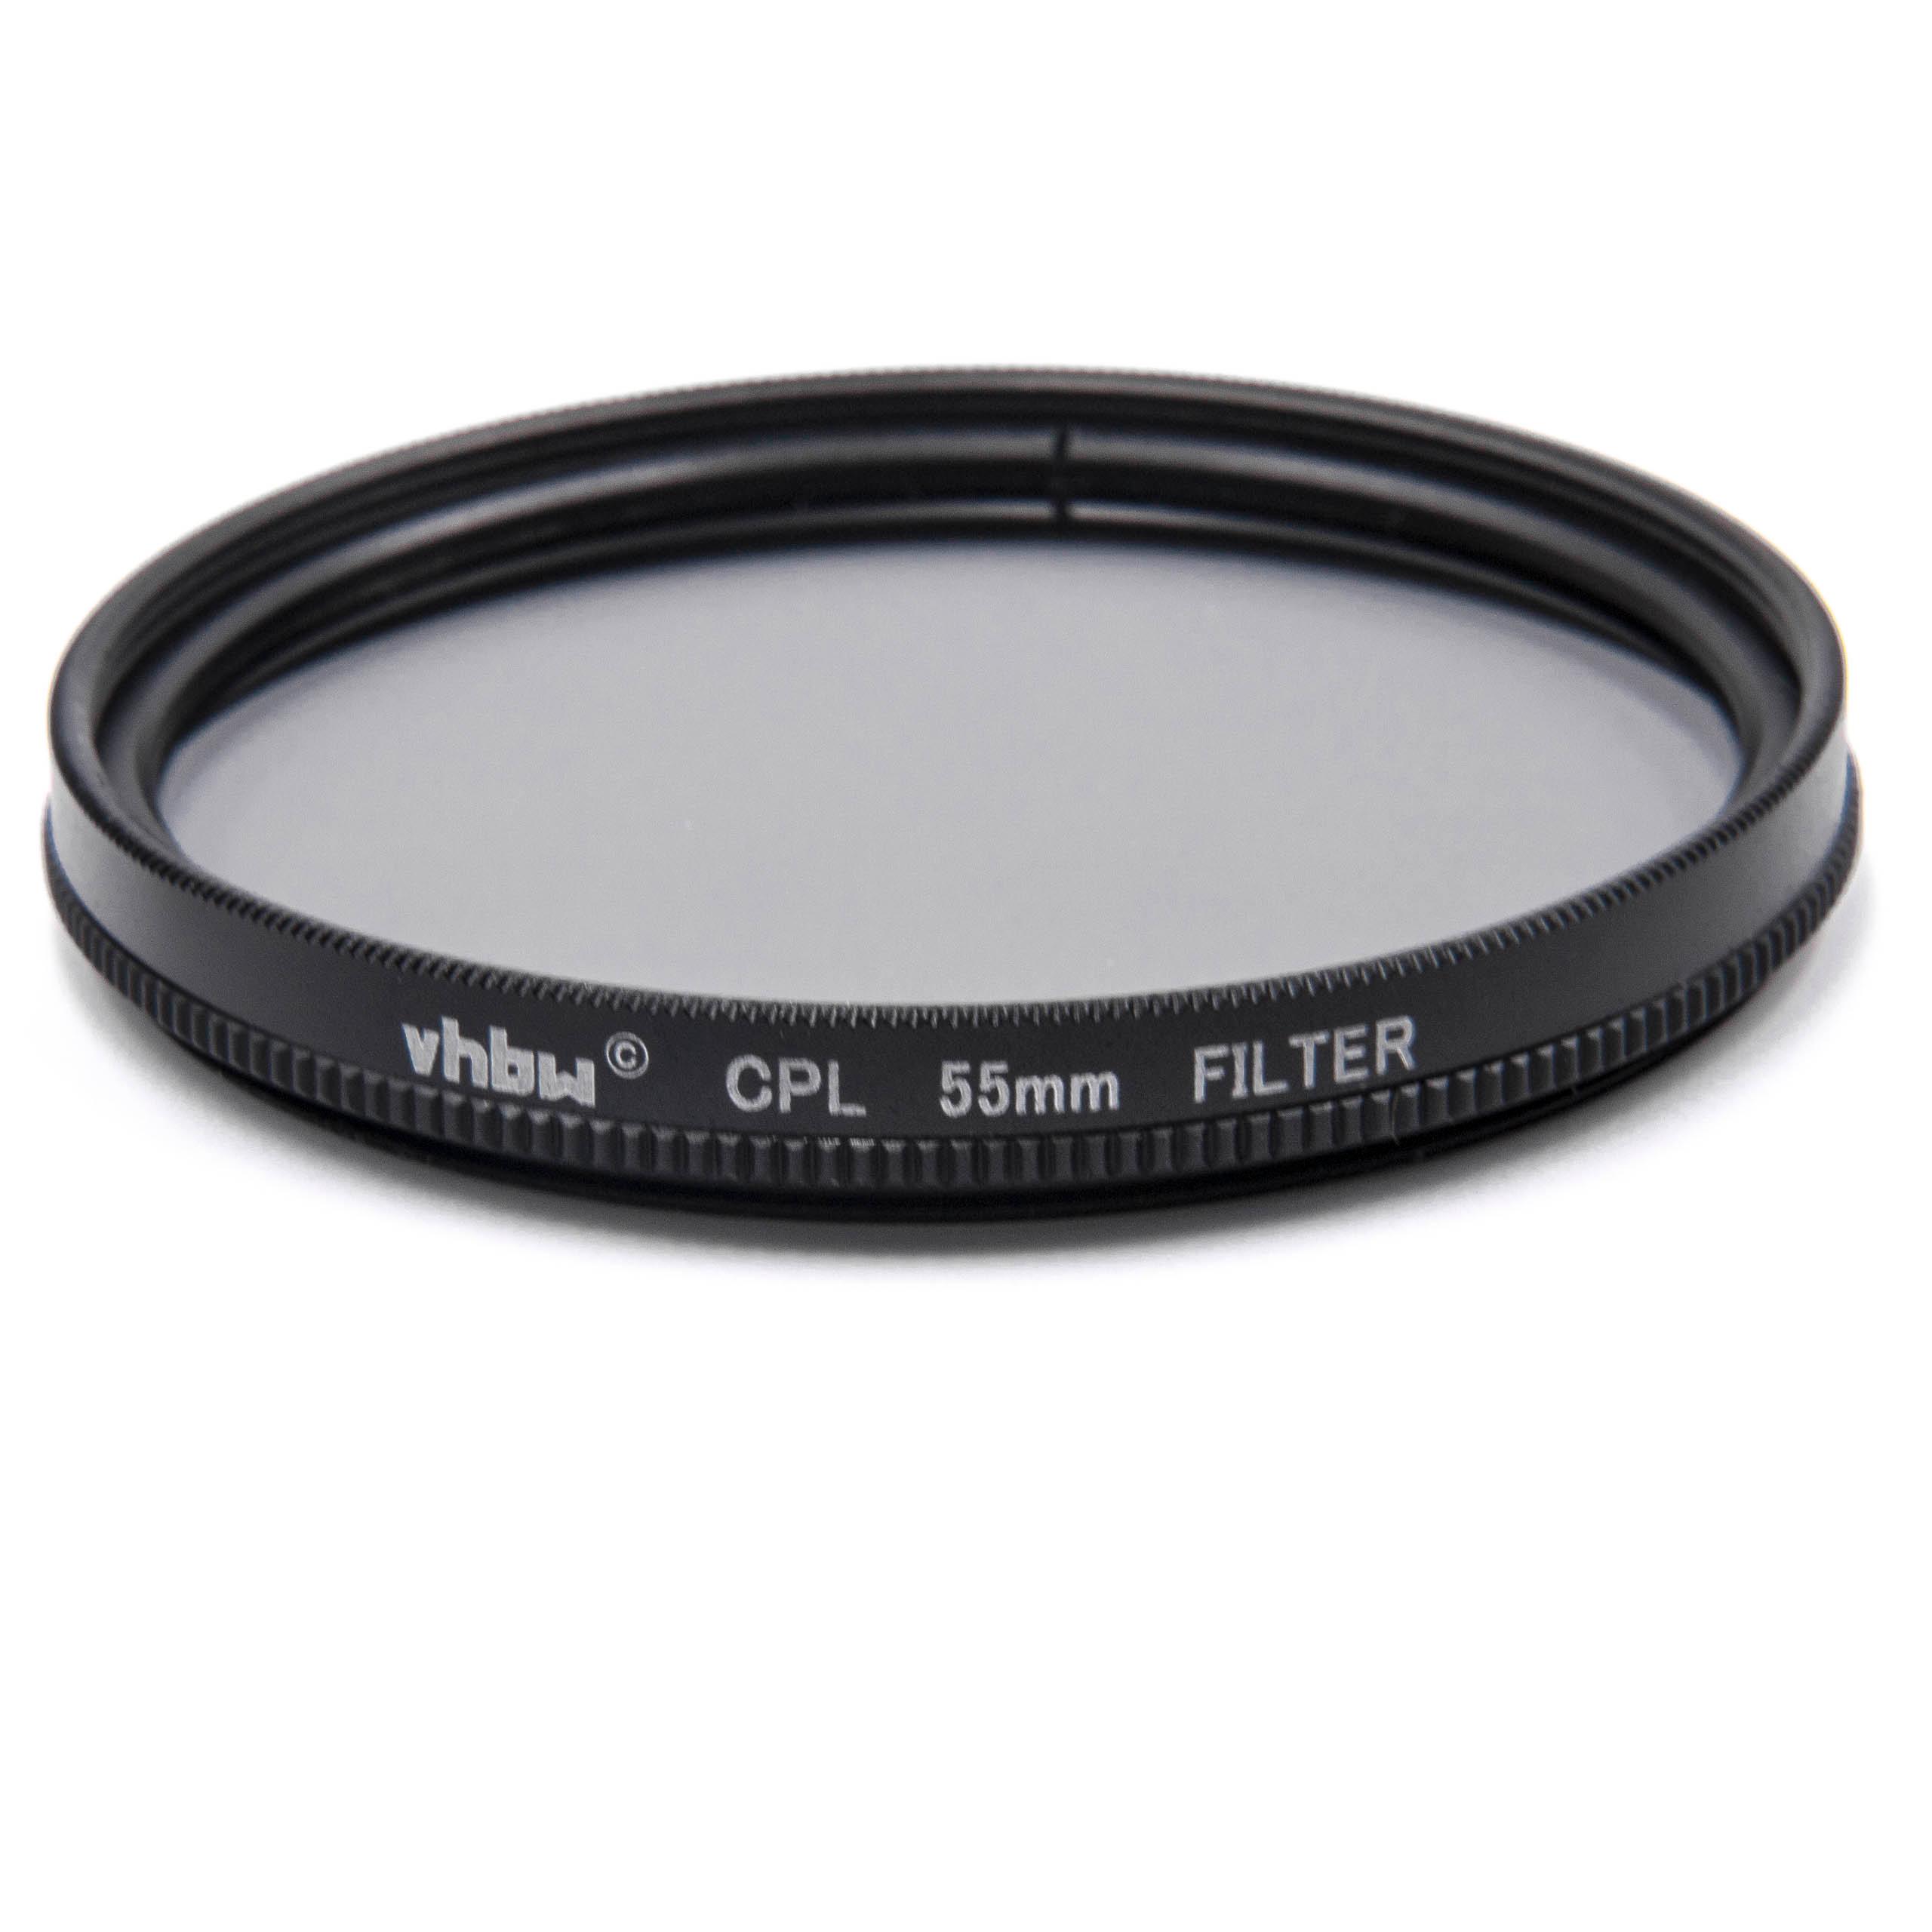 Filtre polarisant pour appareil photo et objectif de diamètre 55 mm - Filtre CPL